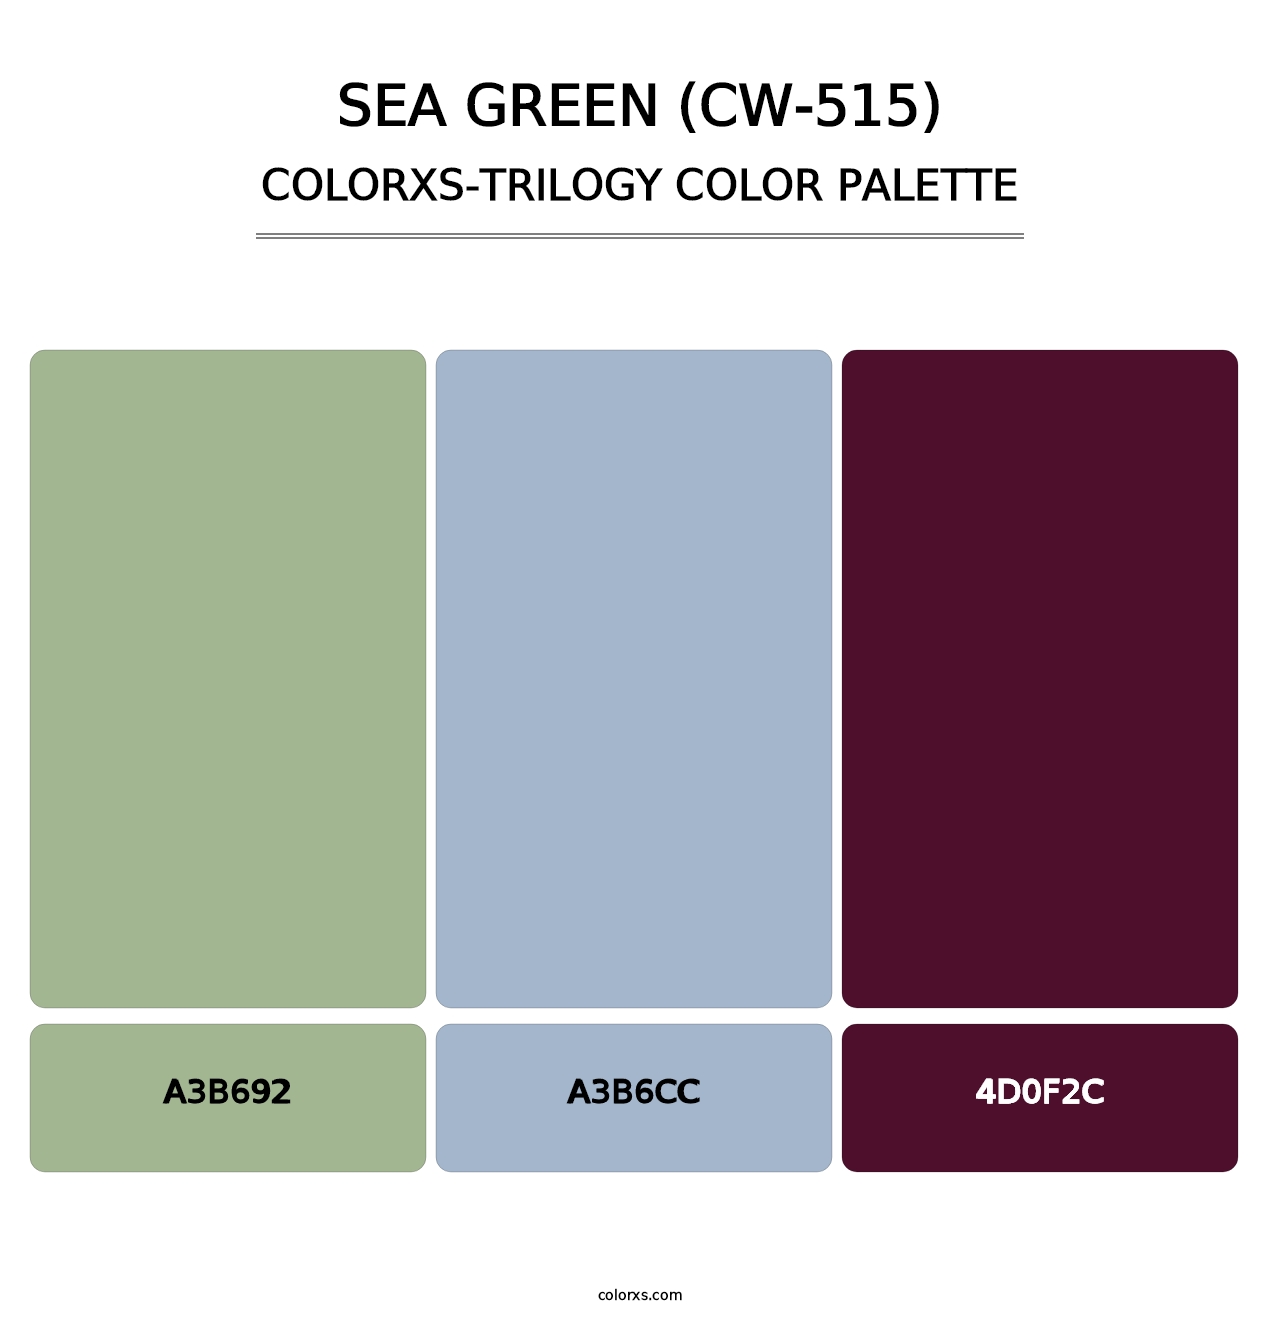 Sea Green (CW-515) - Colorxs Trilogy Palette